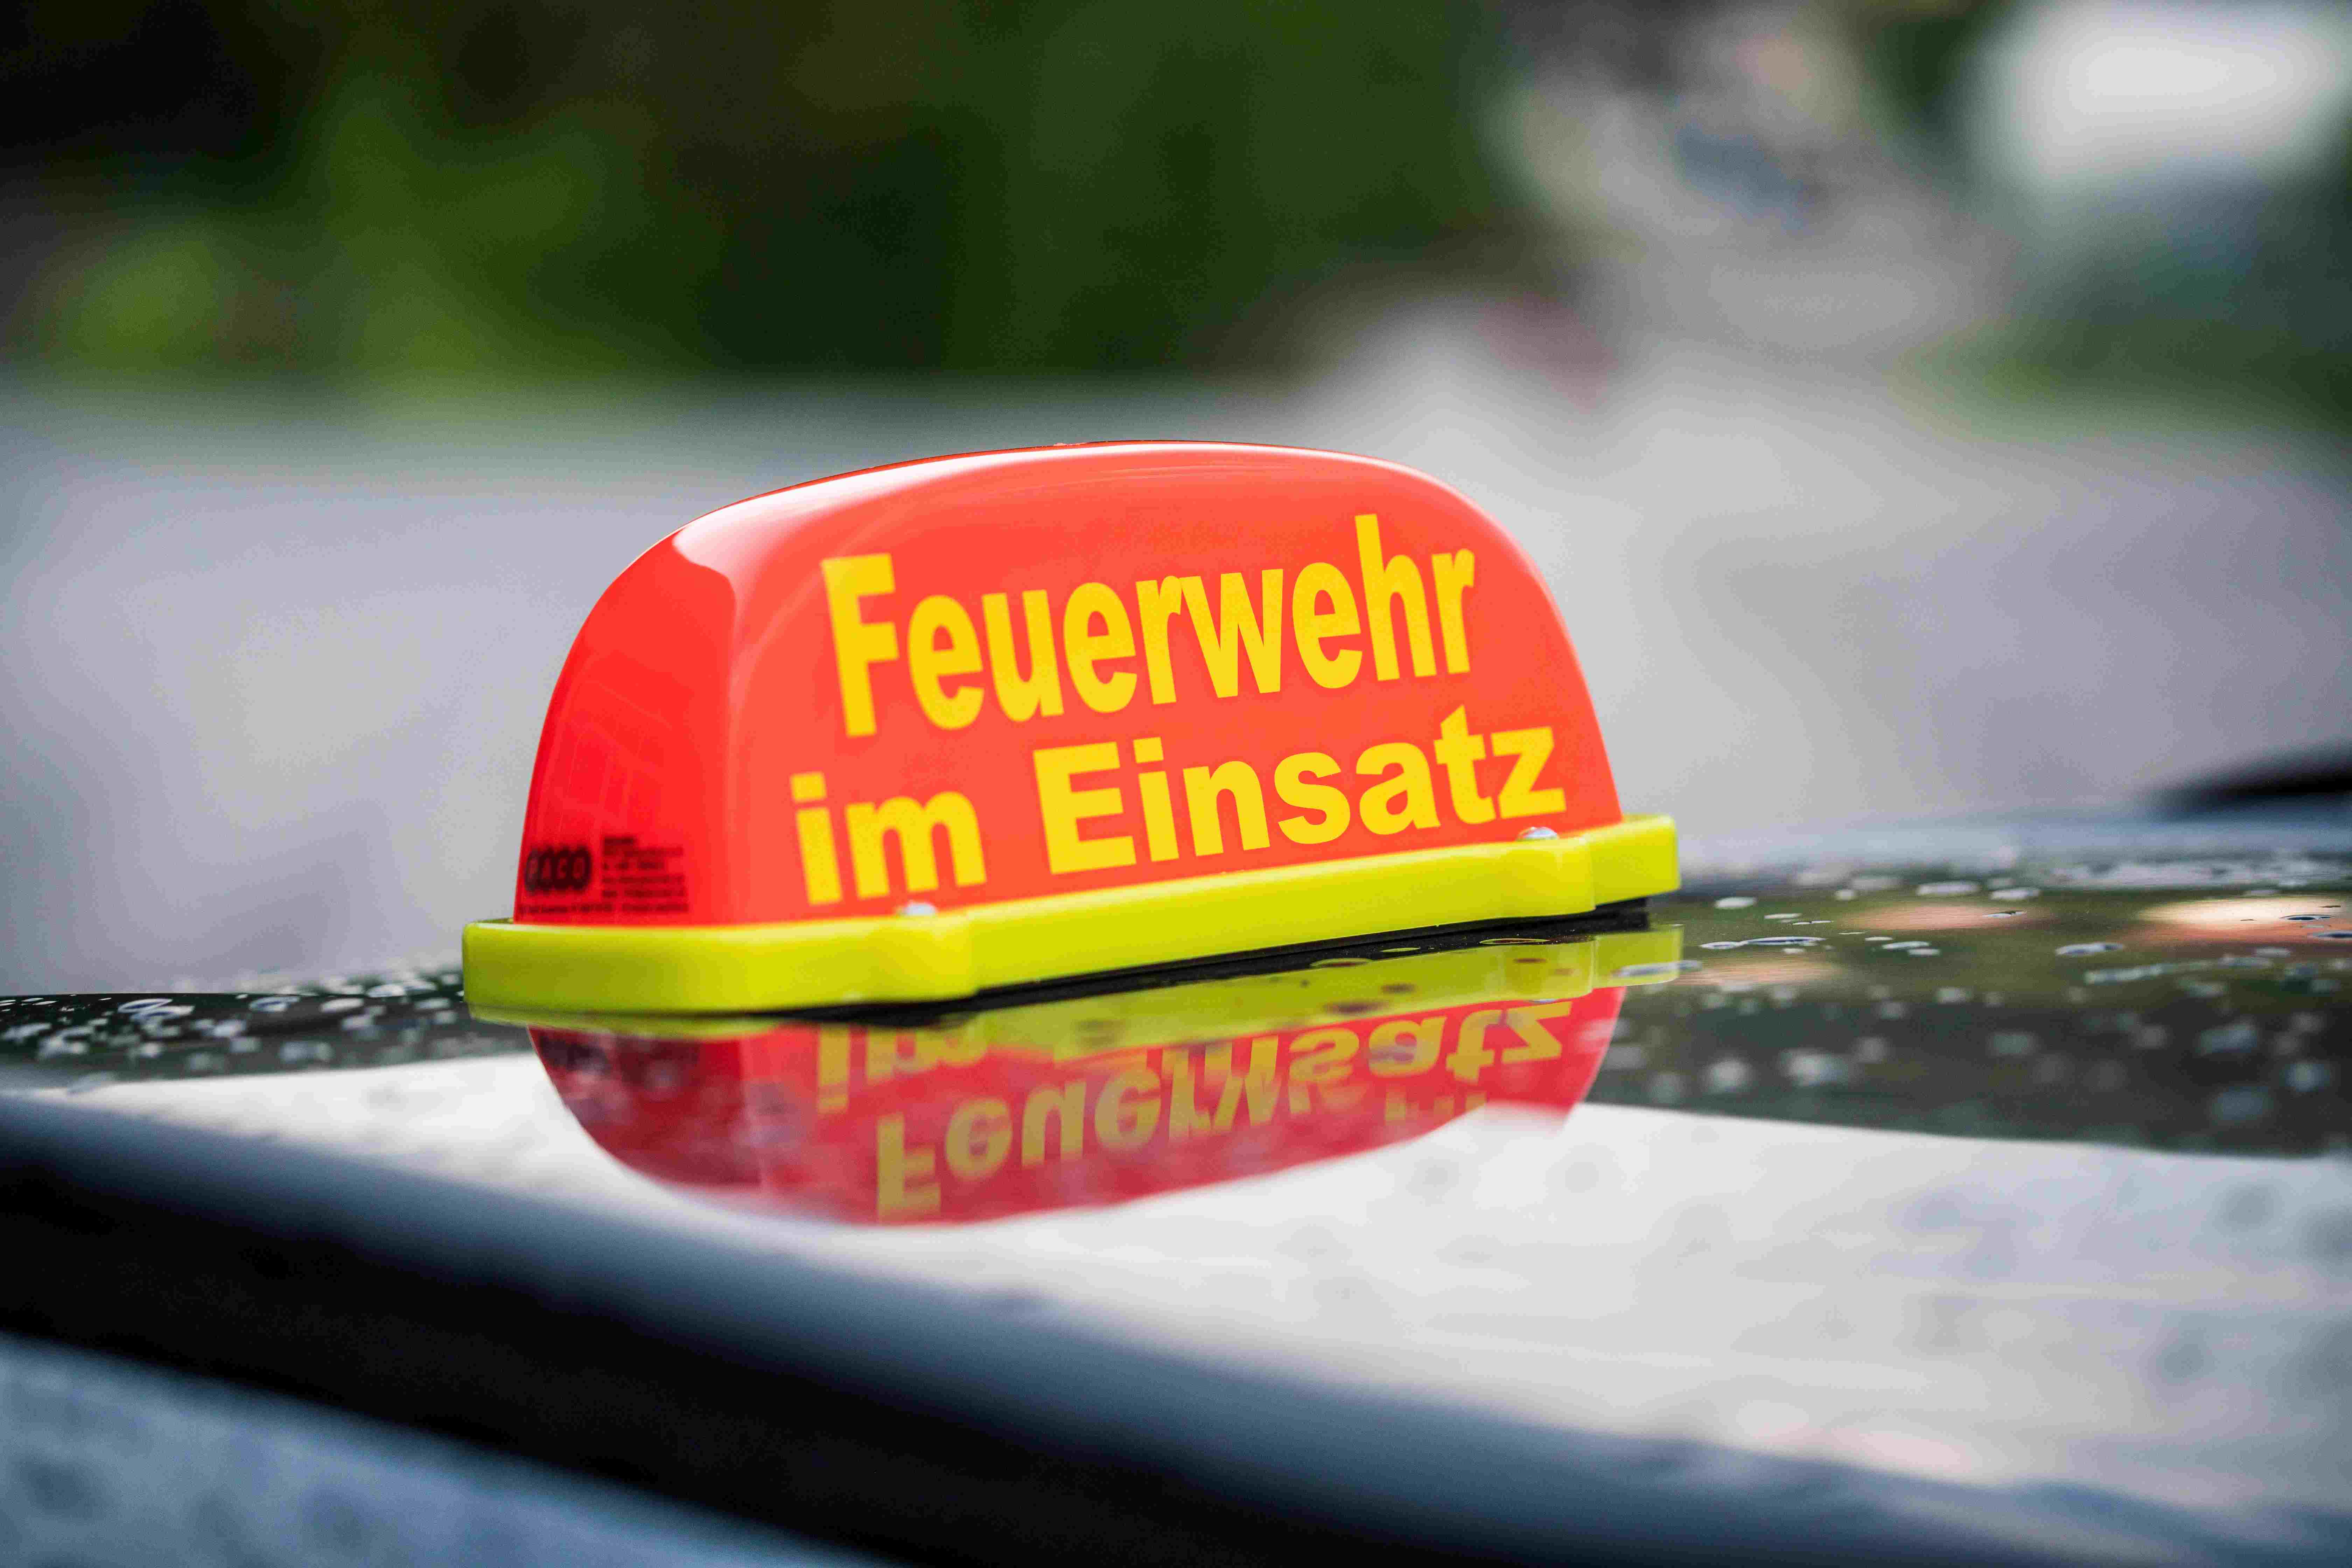 Feuerwehr Dachaufsetzer Feuerwehr im Einsatz in Rheinland-Pfalz